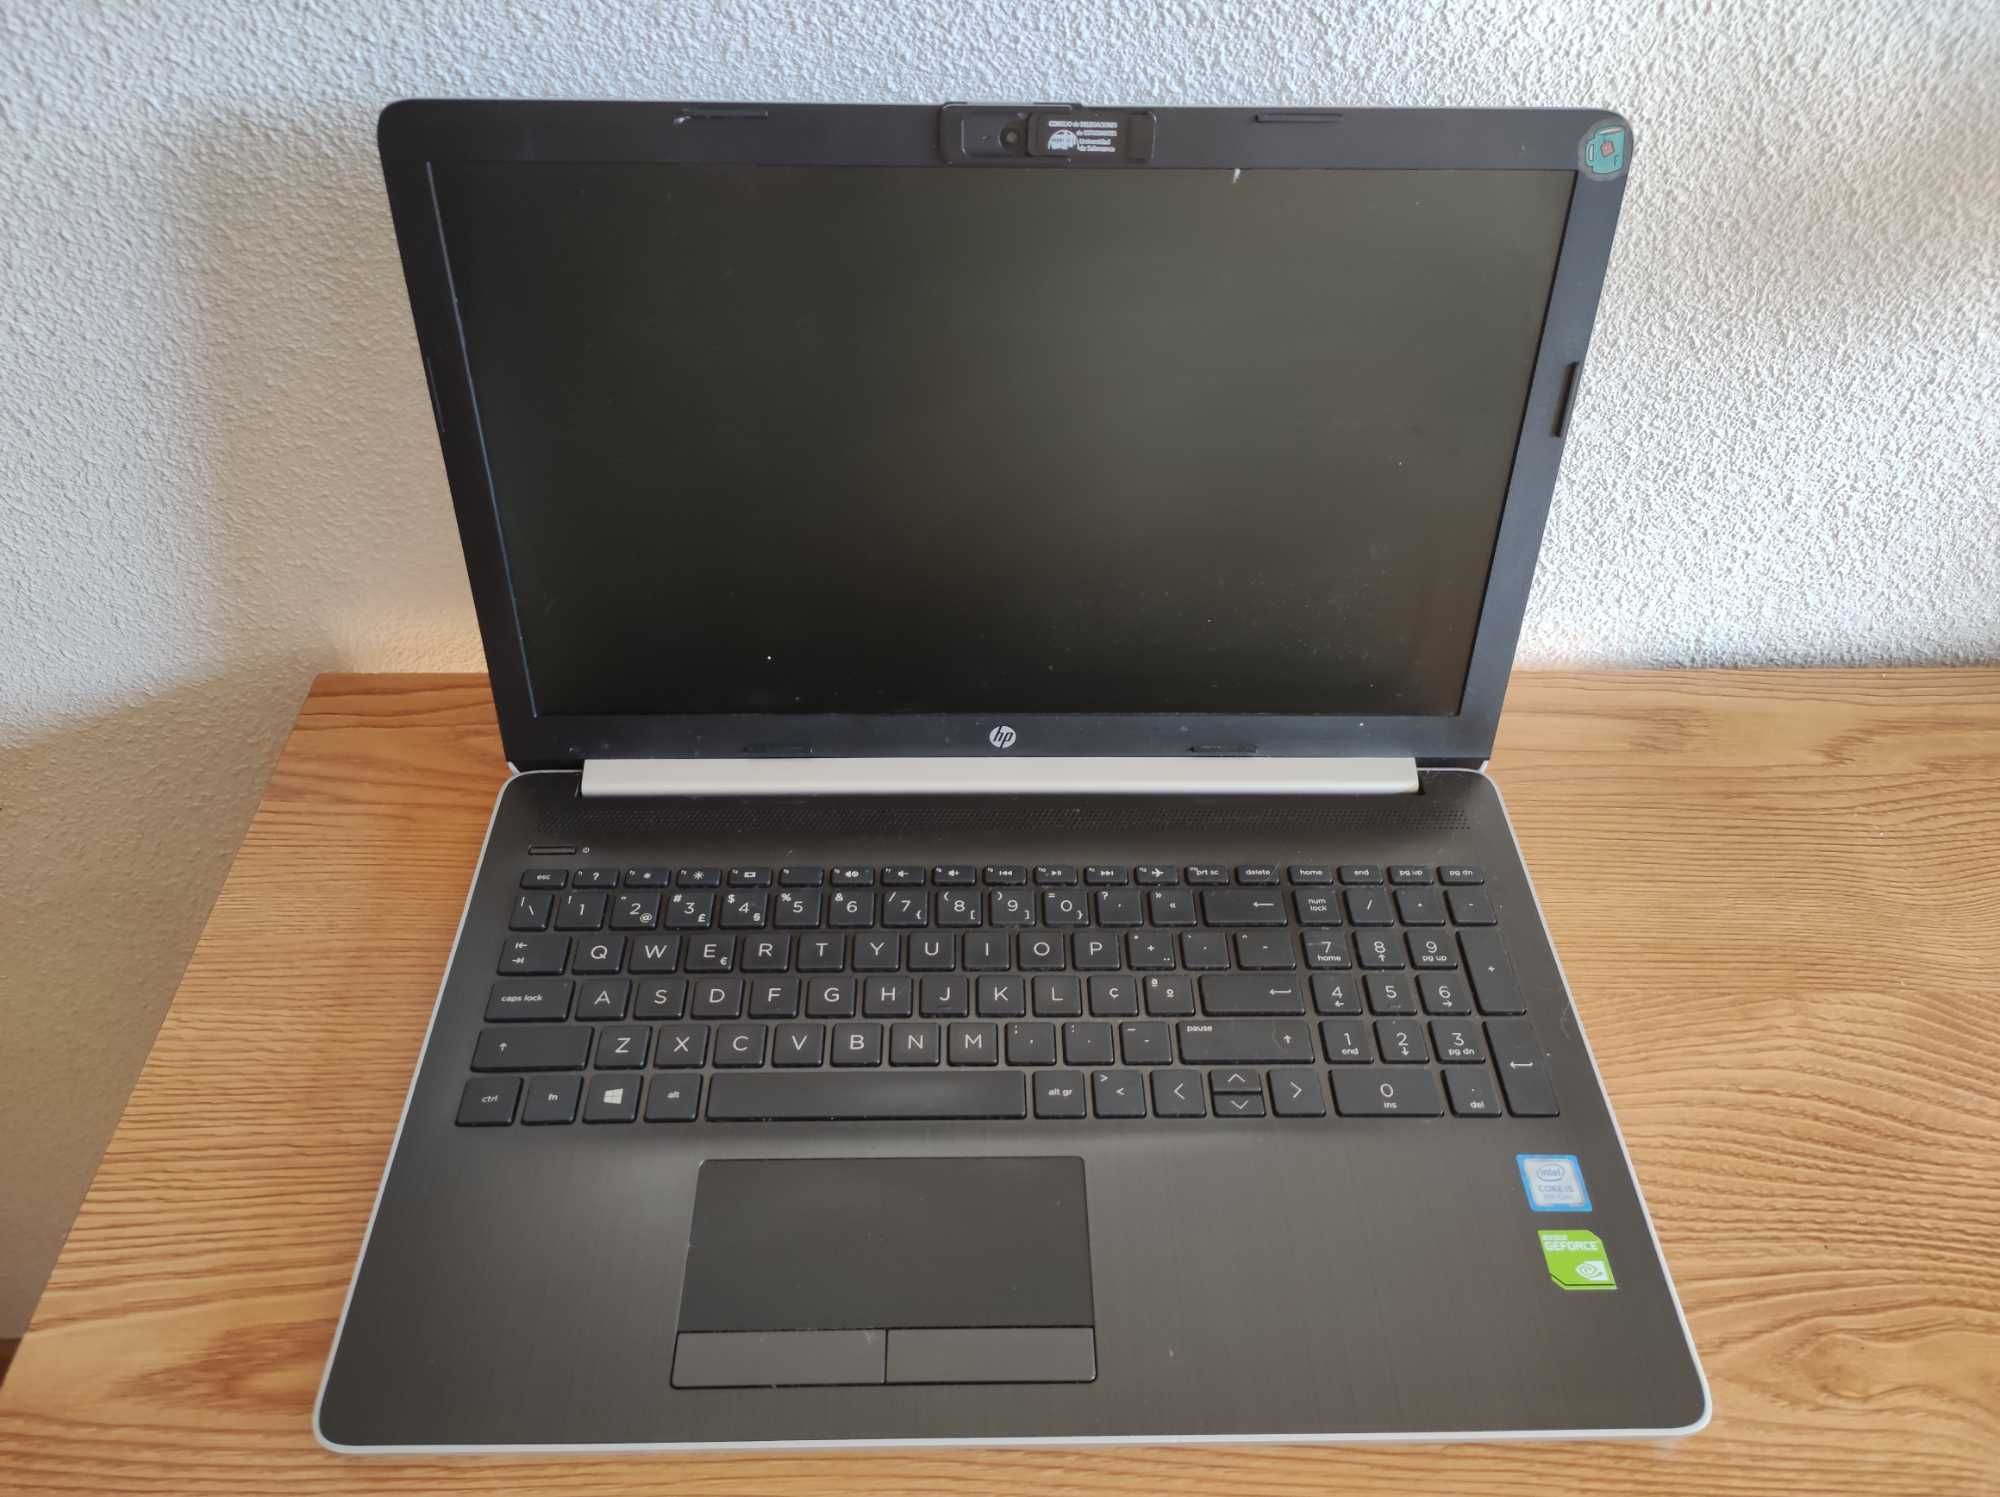 Portátil HP Laptop 15-da0xxx DEFG1JJT de 2020 com 2 anos e meio de uso